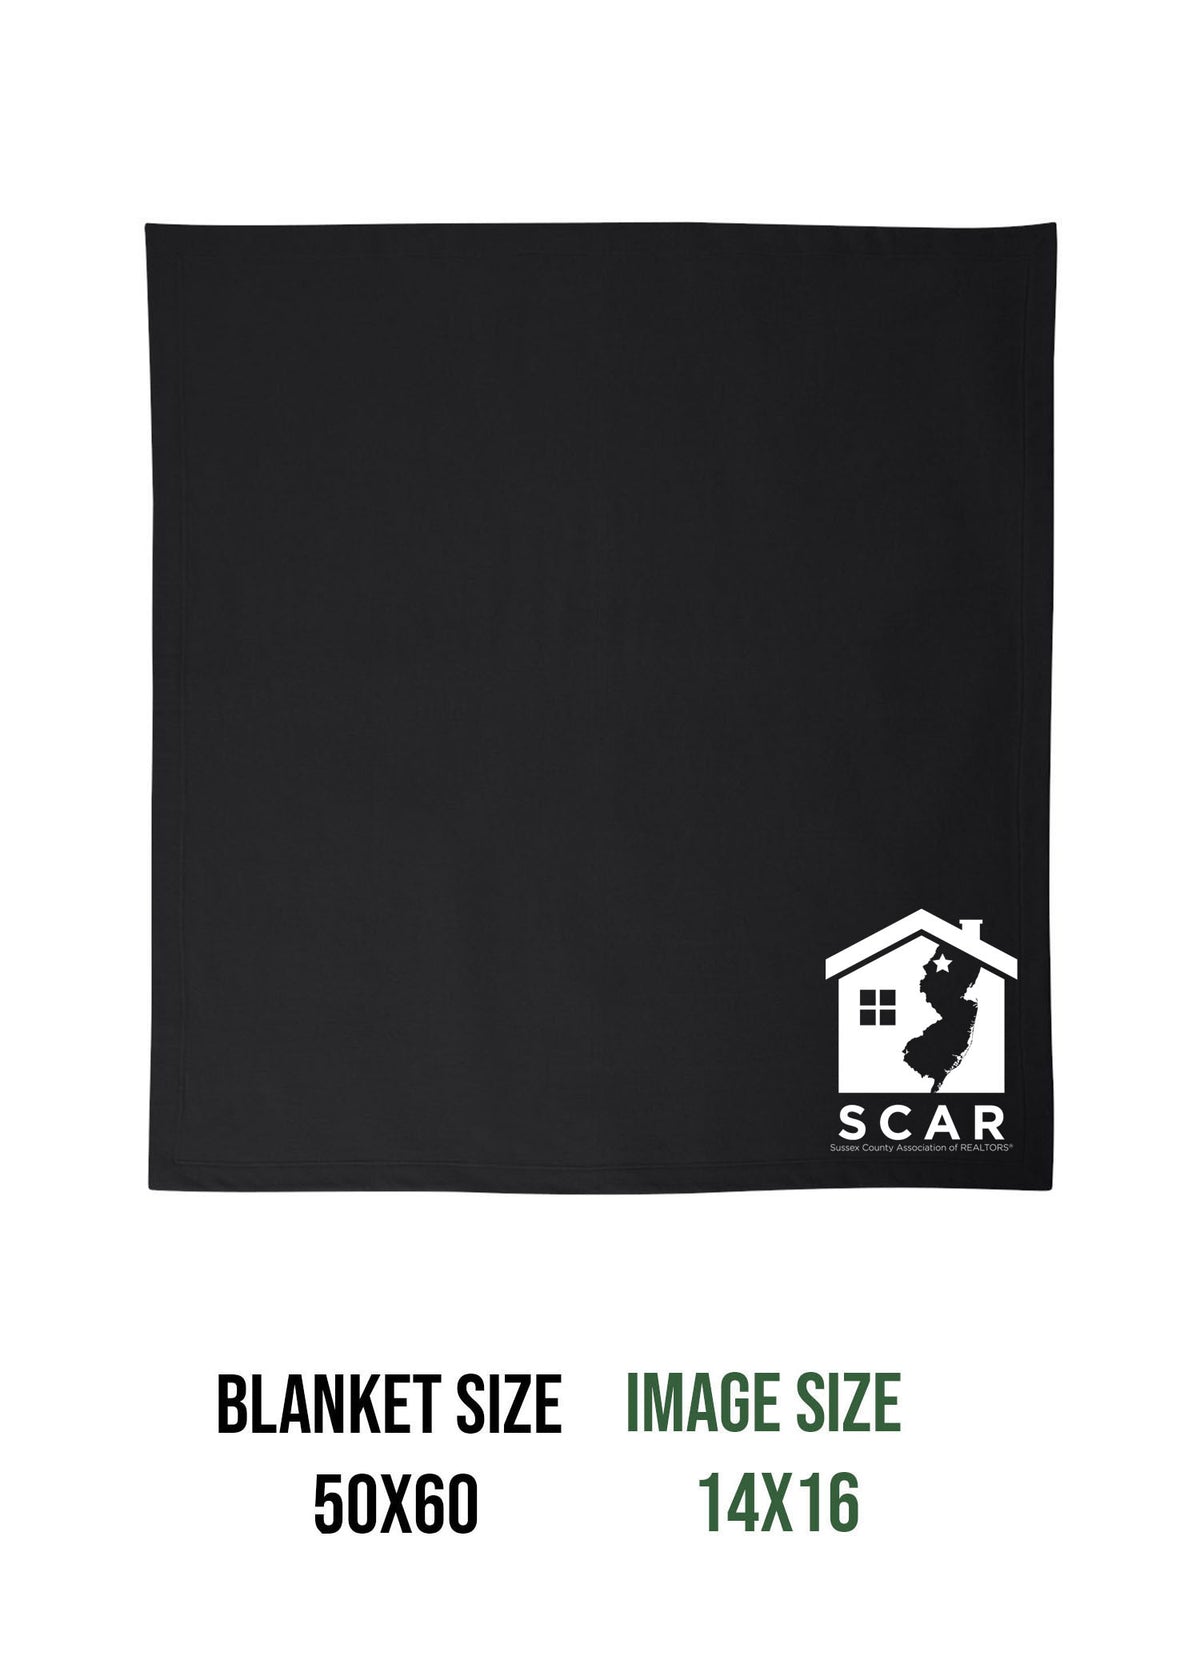 SCAR Blanket Design 1